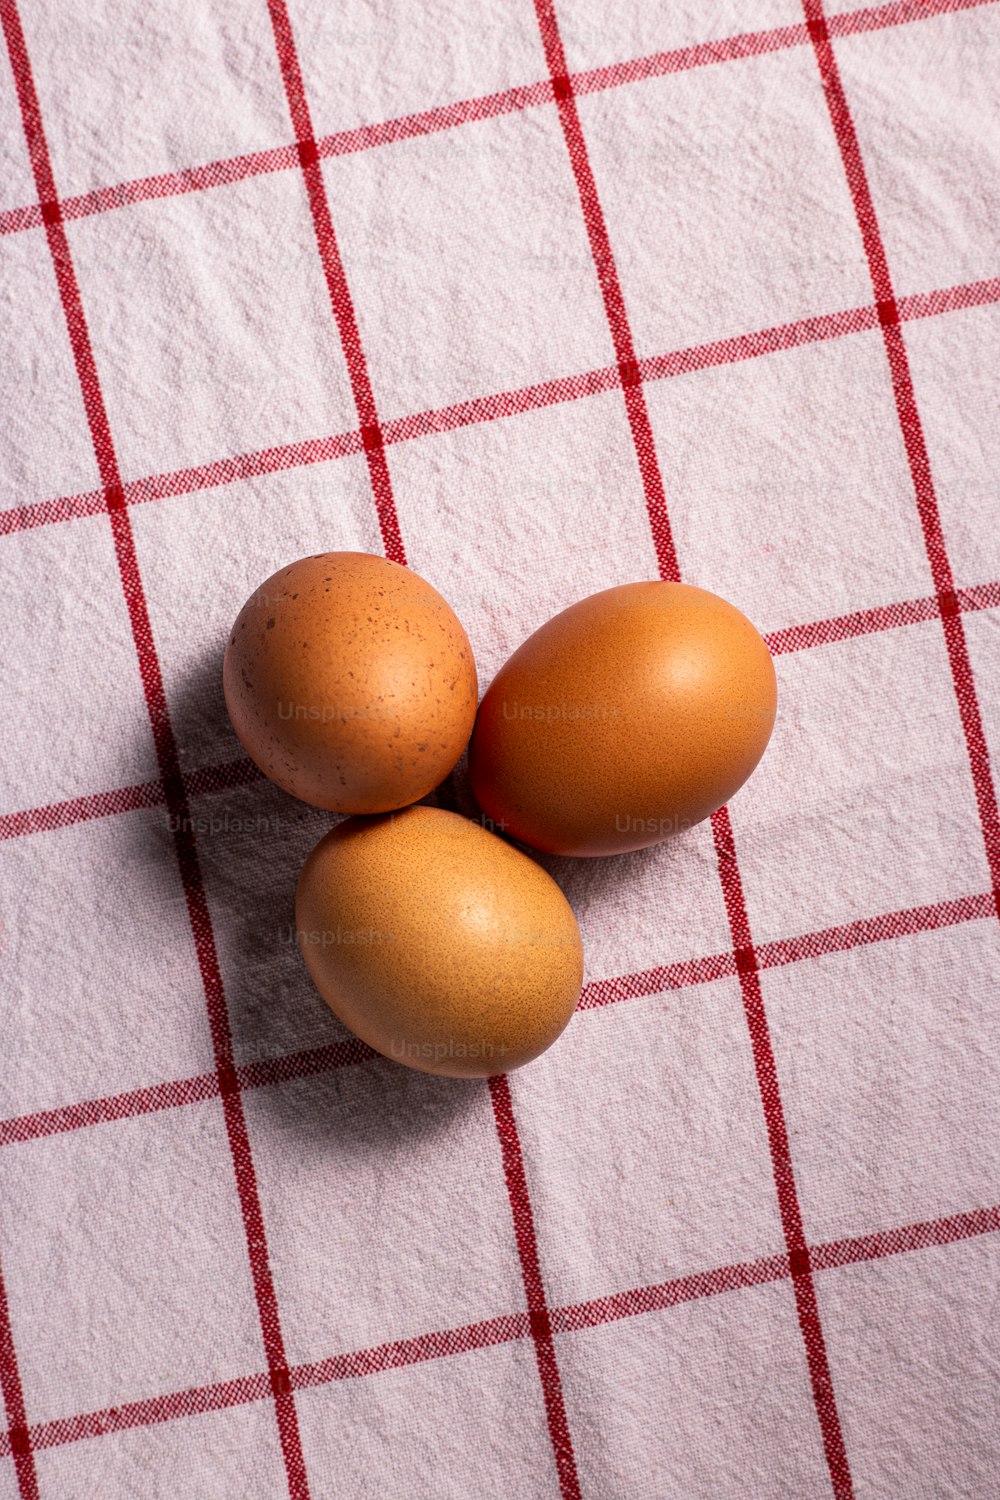 Tres huevos marrones sobre un mantel a cuadros rojo y blanco